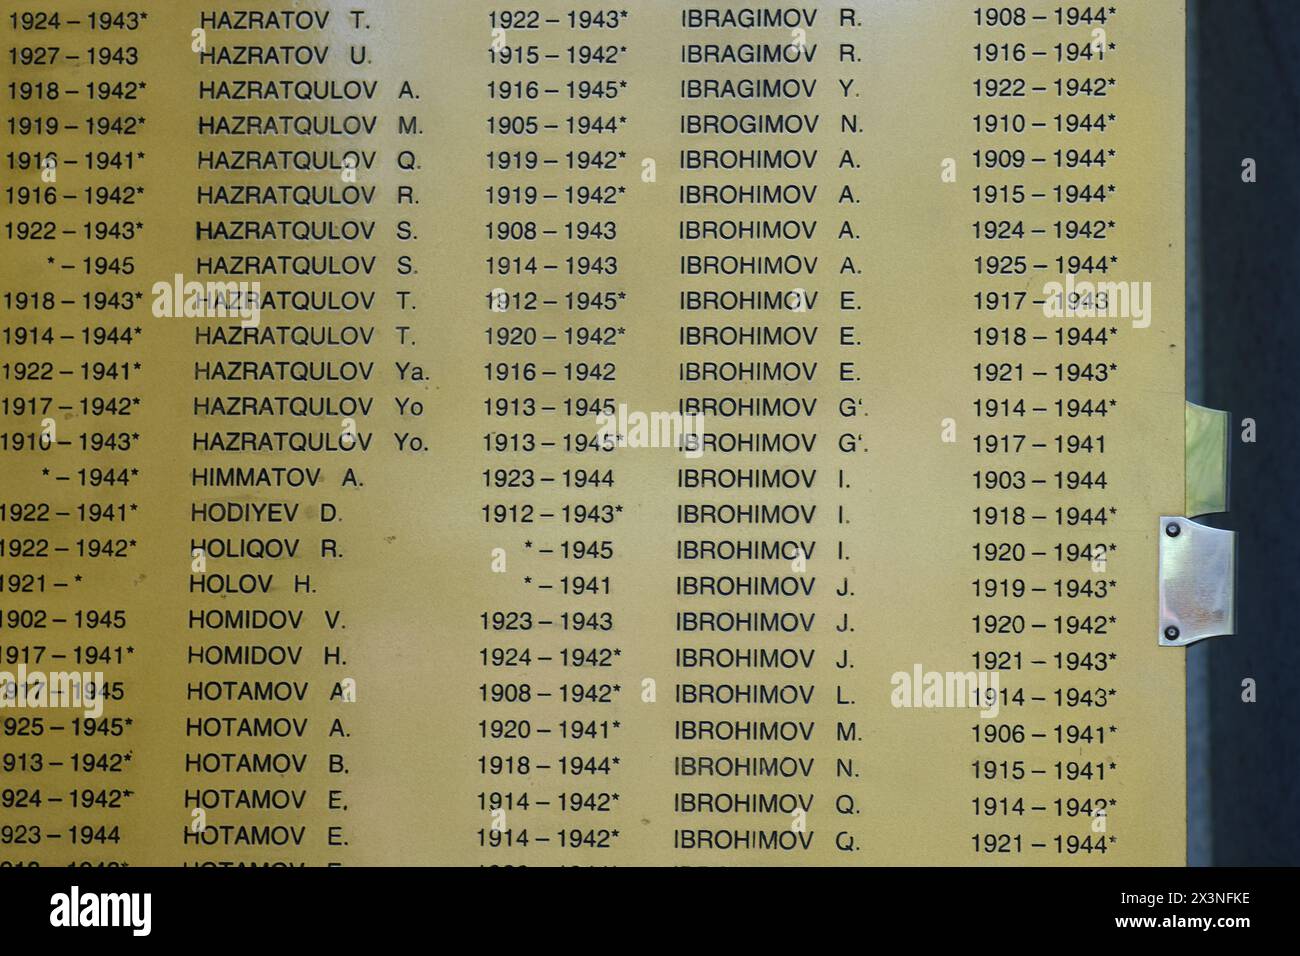 Samarcanda Uzbekistan - nomi sul memoriale dei soldati caduti di Samarcanda Uzbekistan che morirono combattendo per l'Armata Rossa sovietica durante la seconda guerra mondiale Foto Stock